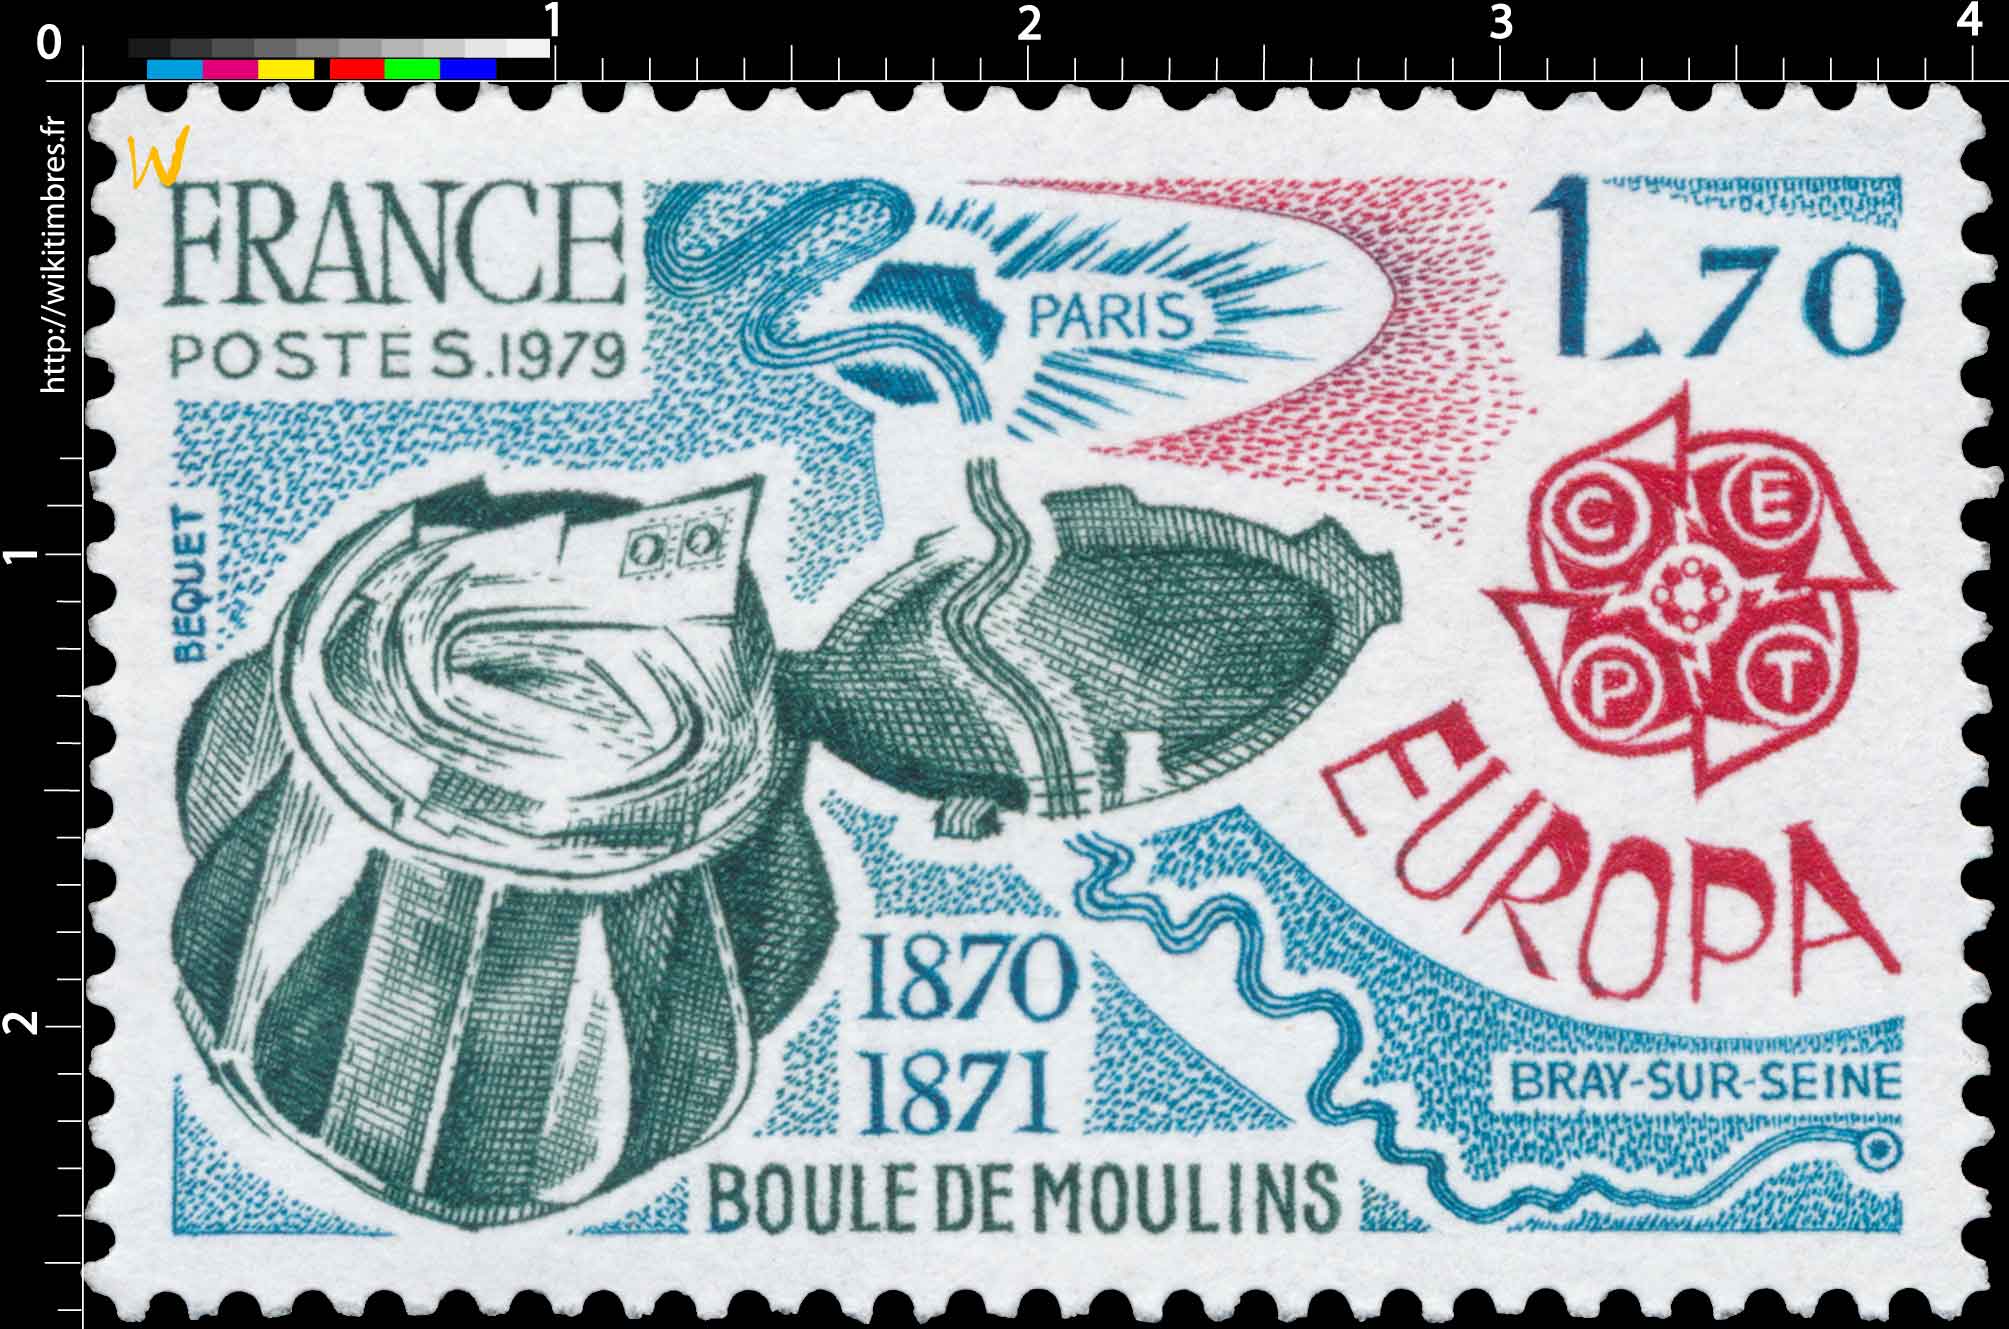 1979 EUROPA CEPT BOULE DE MOULINS 1870-1871 PARIS BRAY-SUR-SEINE